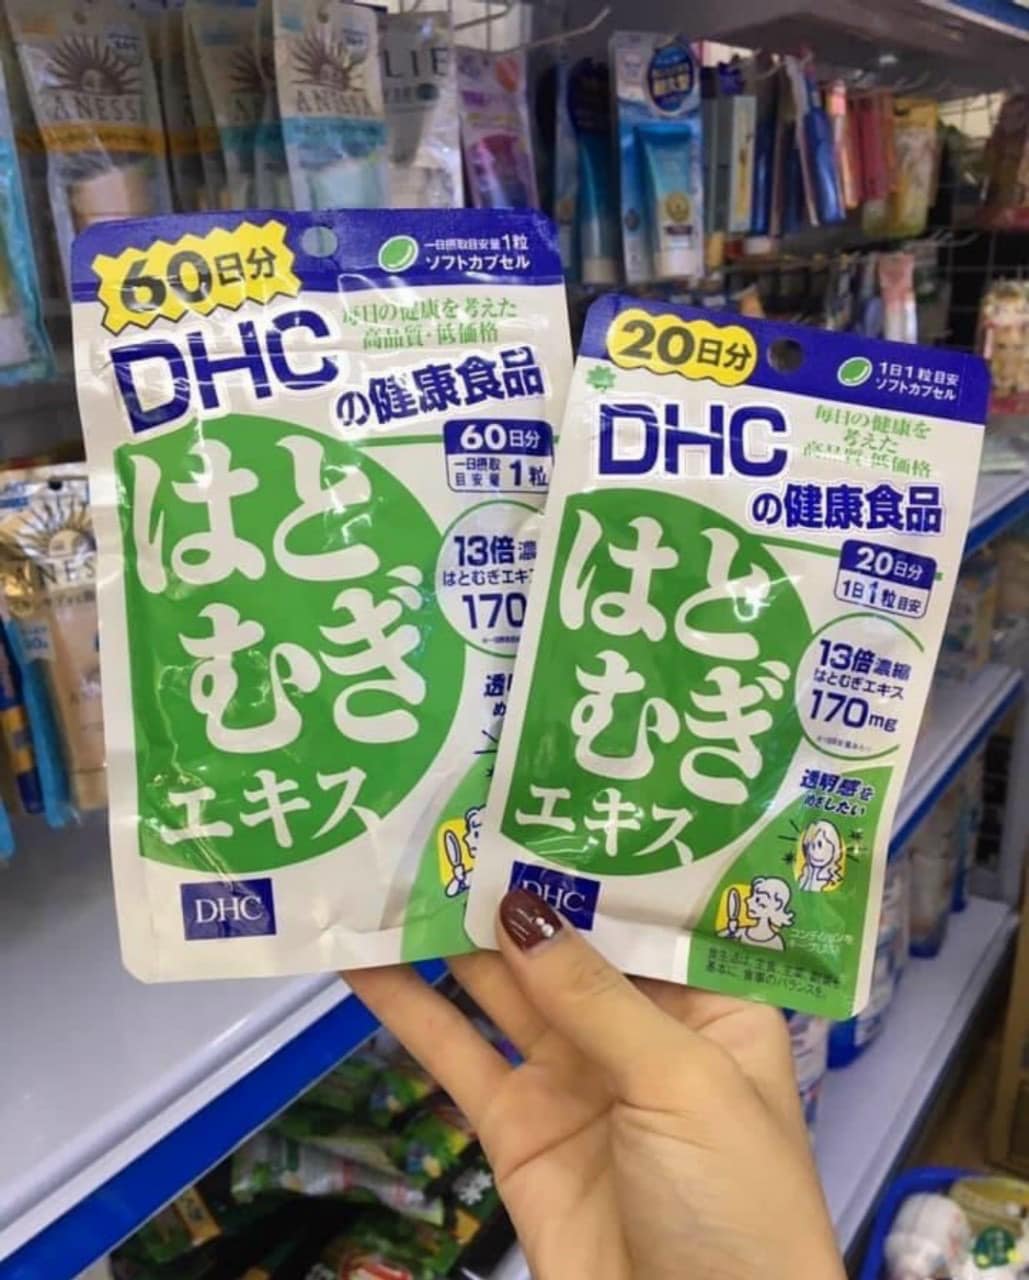 Túi zip để đựng Viên Uống D.H.C trắng da 20 Ngày - DHC_trắng da Nhật Bản 20 Ngày